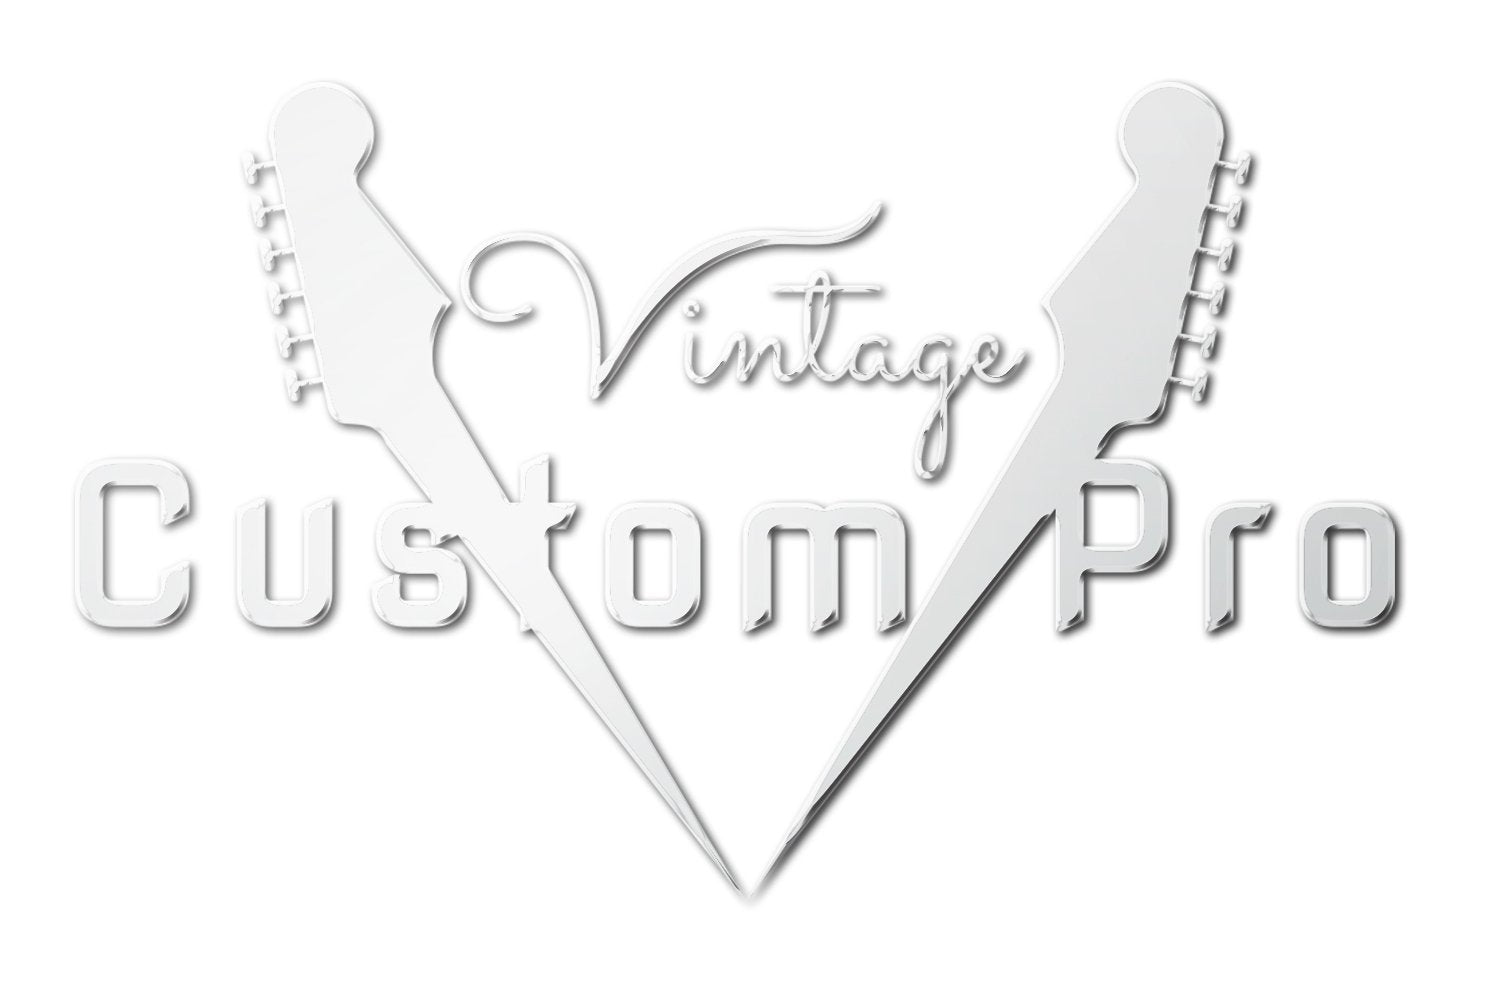 Vintage* VS6MRCR Electric Guitar, Electric Guitar for sale at Richards Guitars.